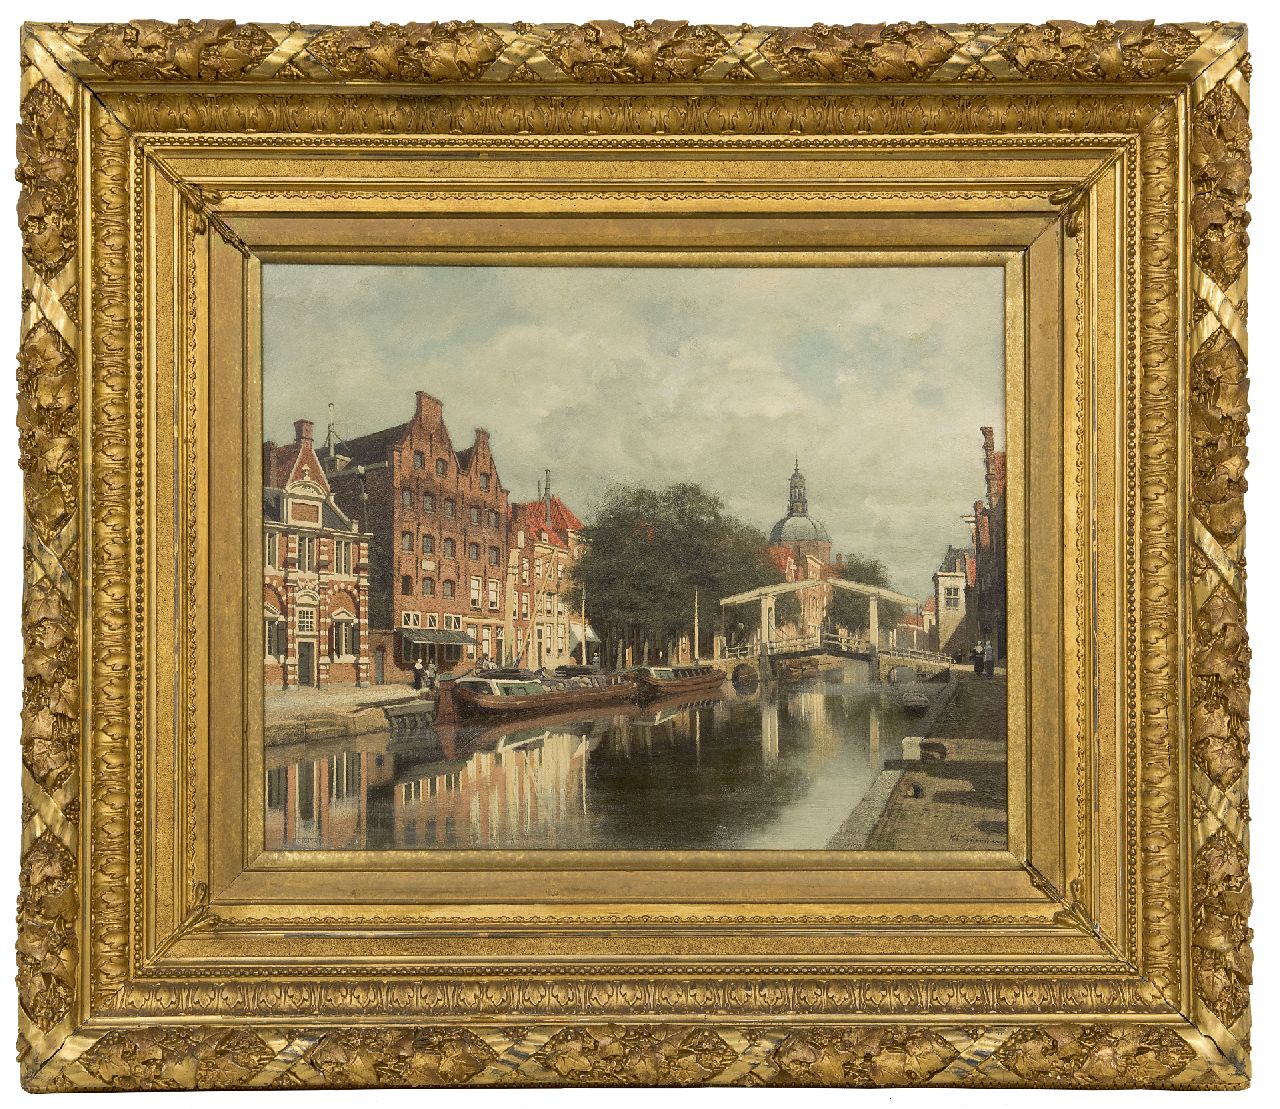 Klinkenberg J.C.K.  | Johannes Christiaan Karel Klinkenberg | Schilderijen te koop aangeboden | De Oude Rijn met de Marekerk te Leiden, olieverf op paneel 39,3 x 51,0 cm, gesigneerd rechtsonder